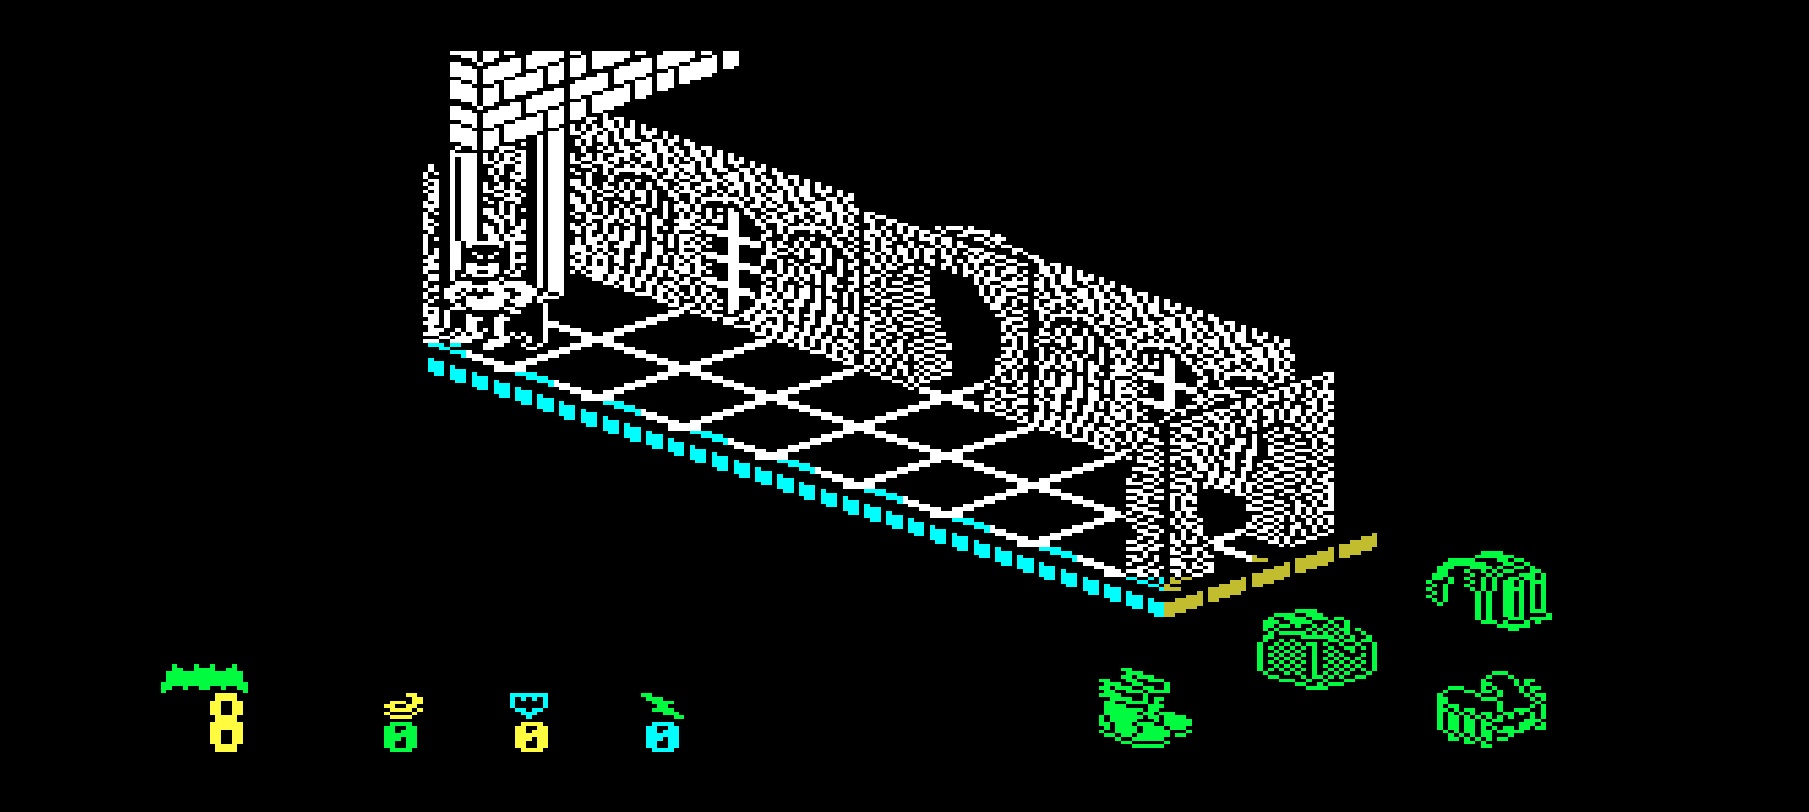 ZX Spectrum artist and programmer Bernie Drummond has died • The Register